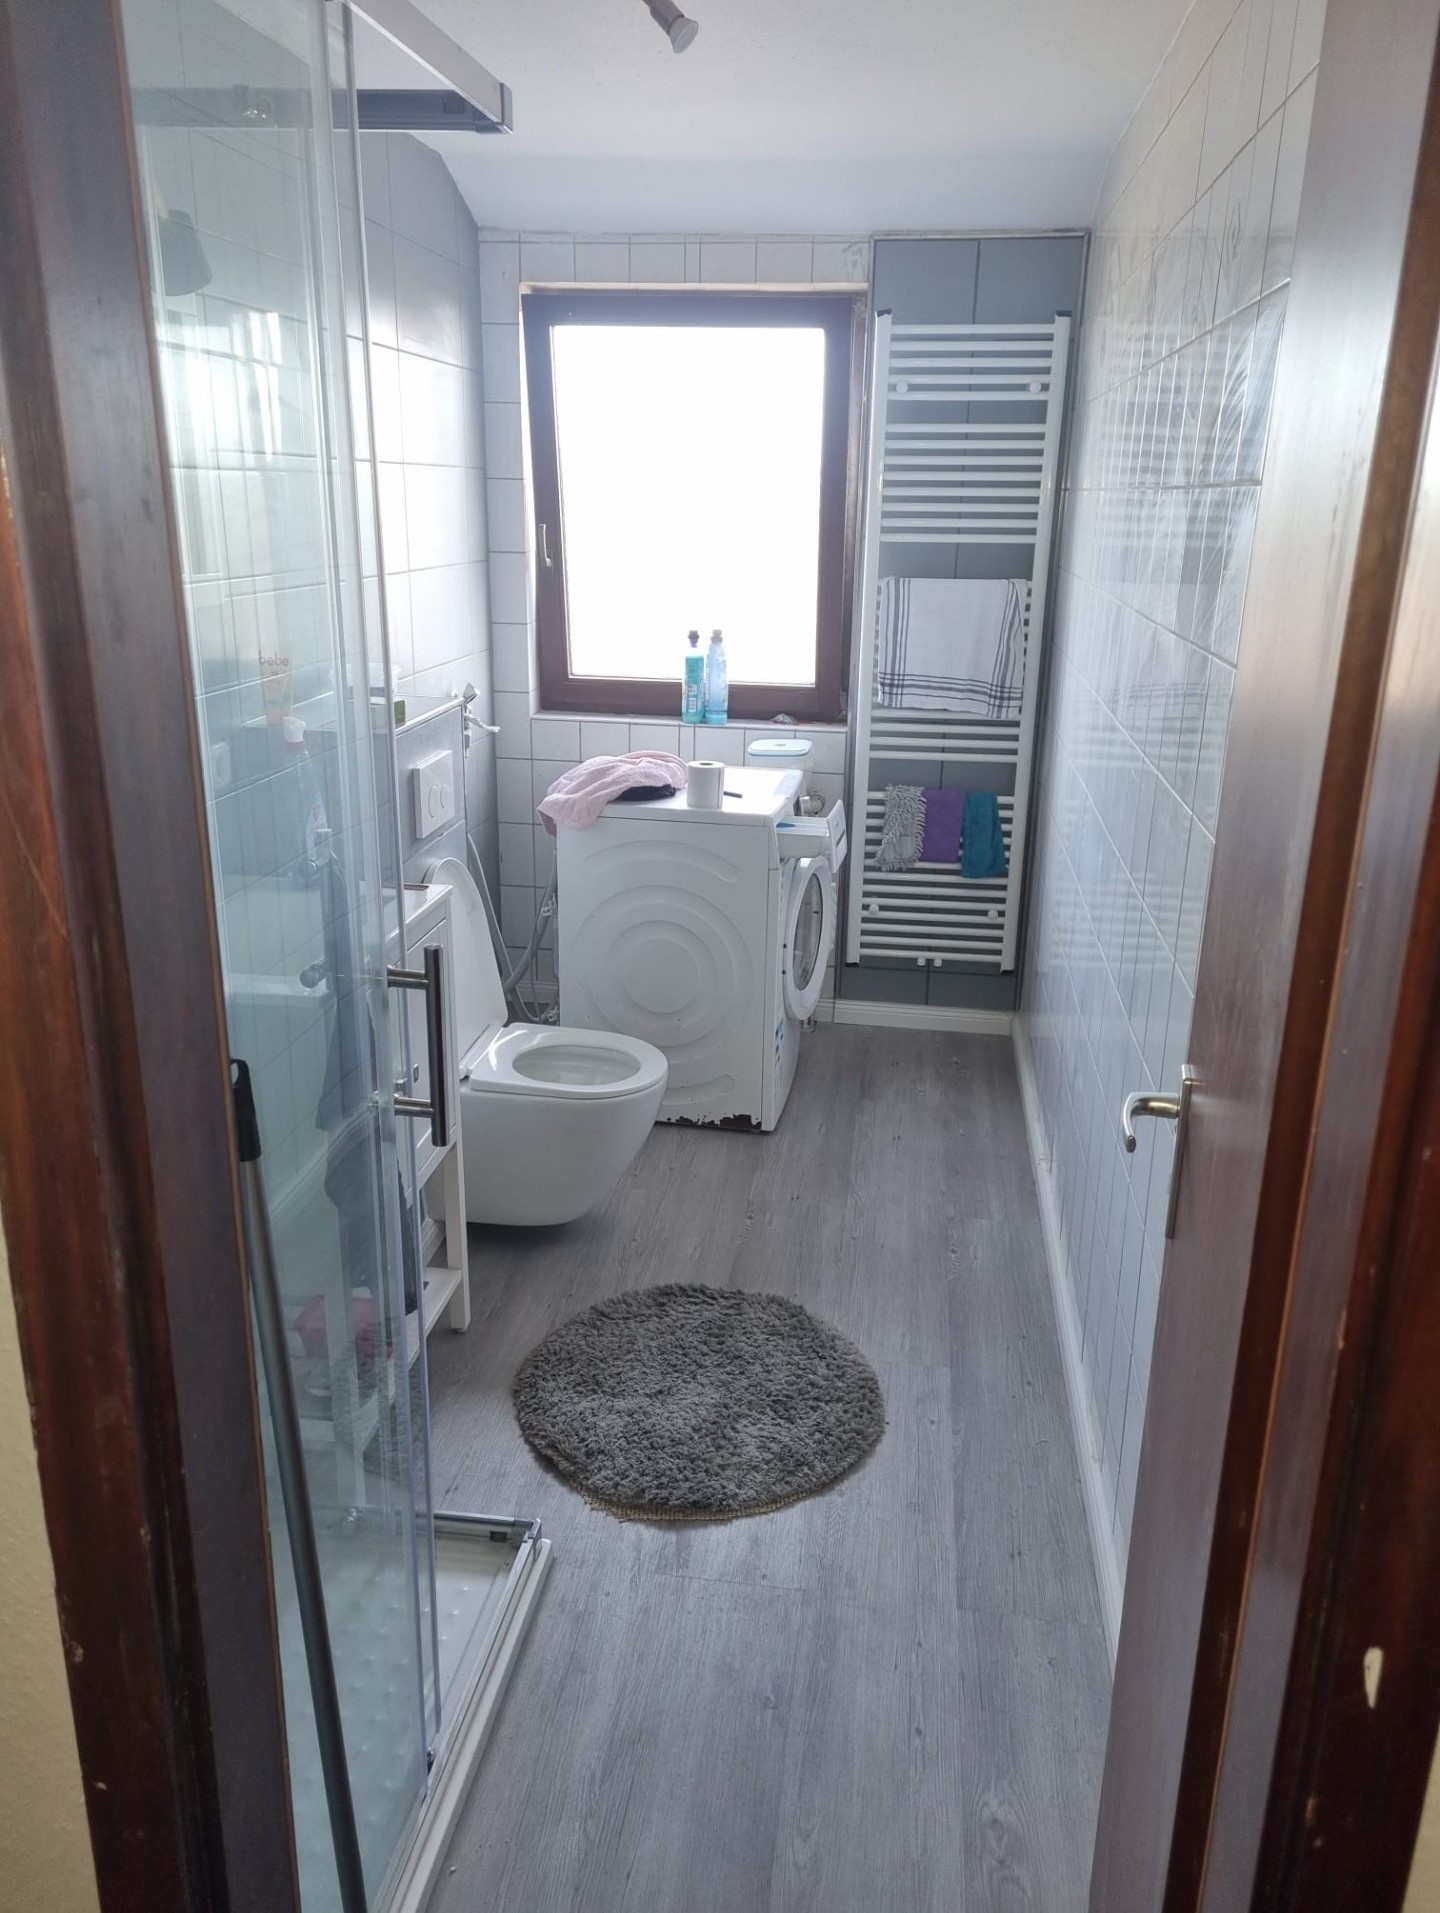 Foto eines sanierten Badezimmers, grauer Laminatboden, Dusche, WC